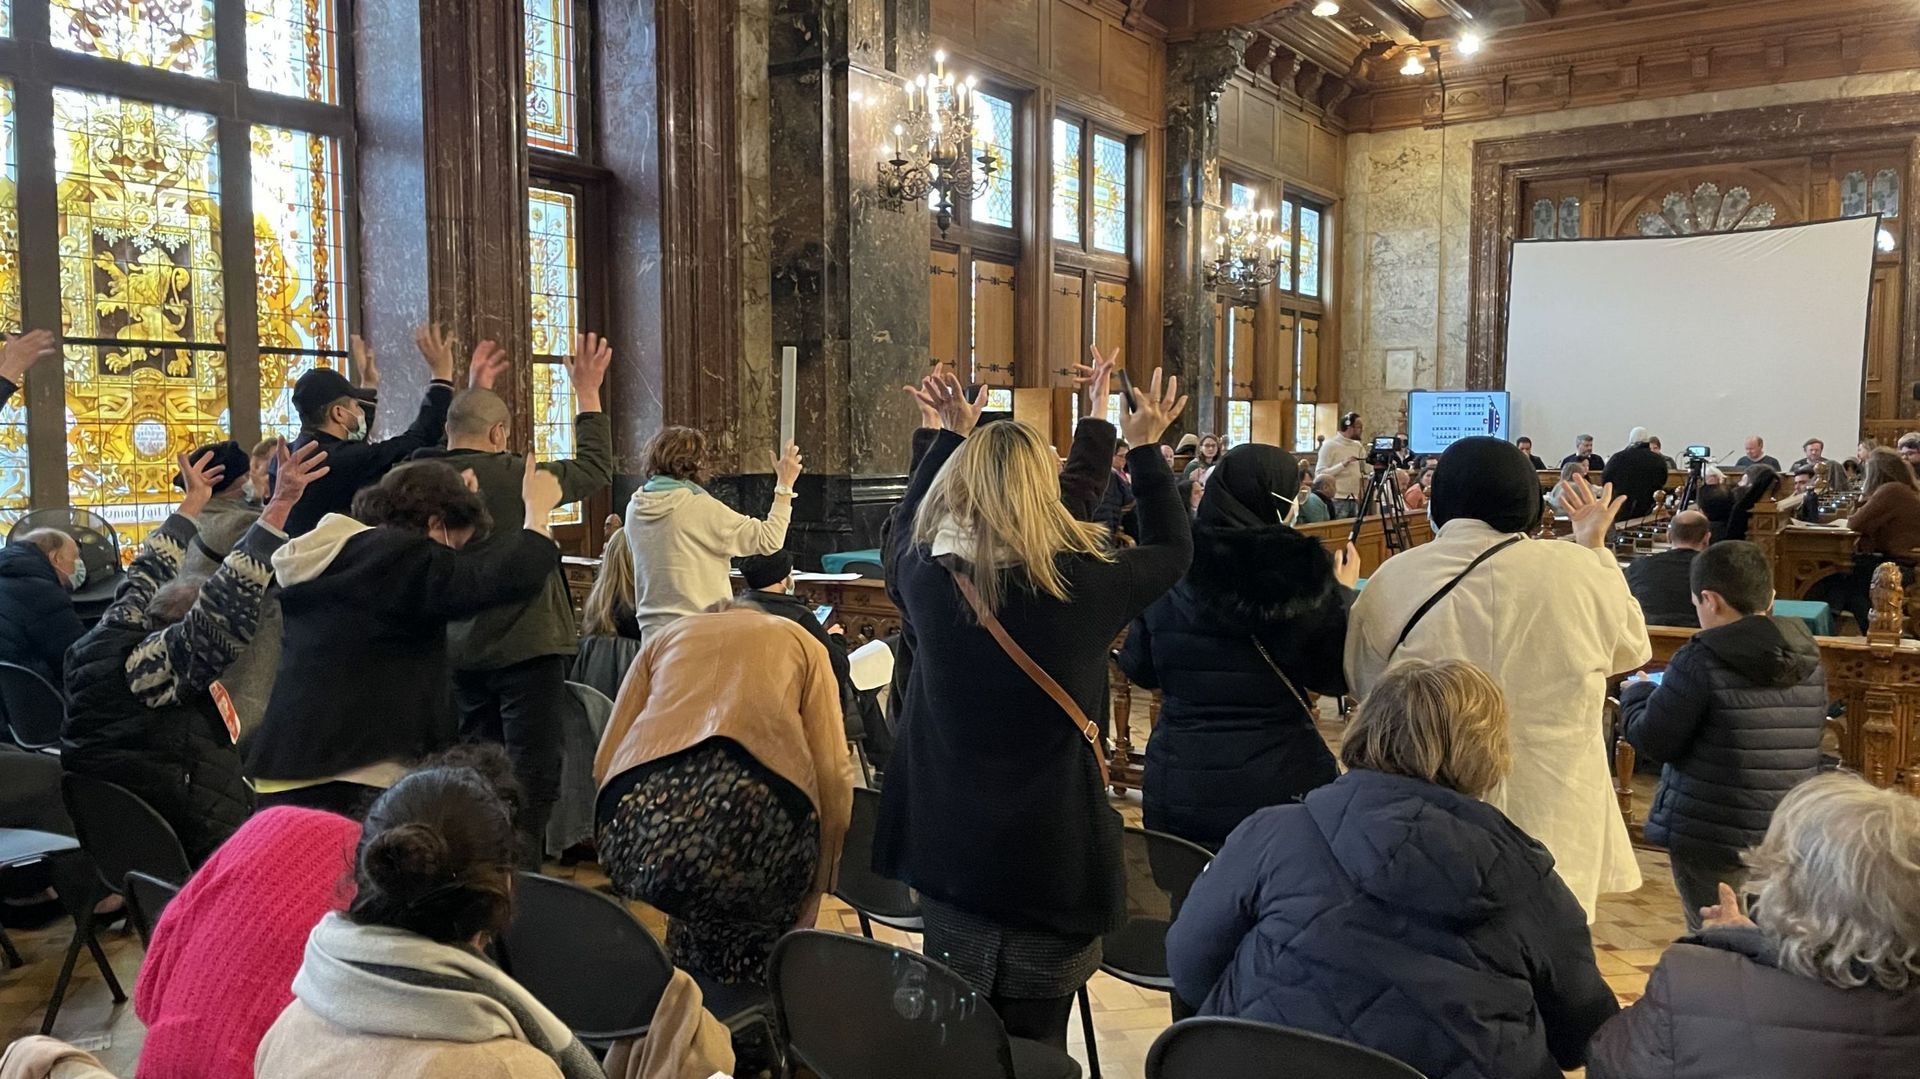 Le public proteste silencieusement lors du conseil communal de Schaerbeek du 29 mars en adoptant les applaudissements de la langue des signes.